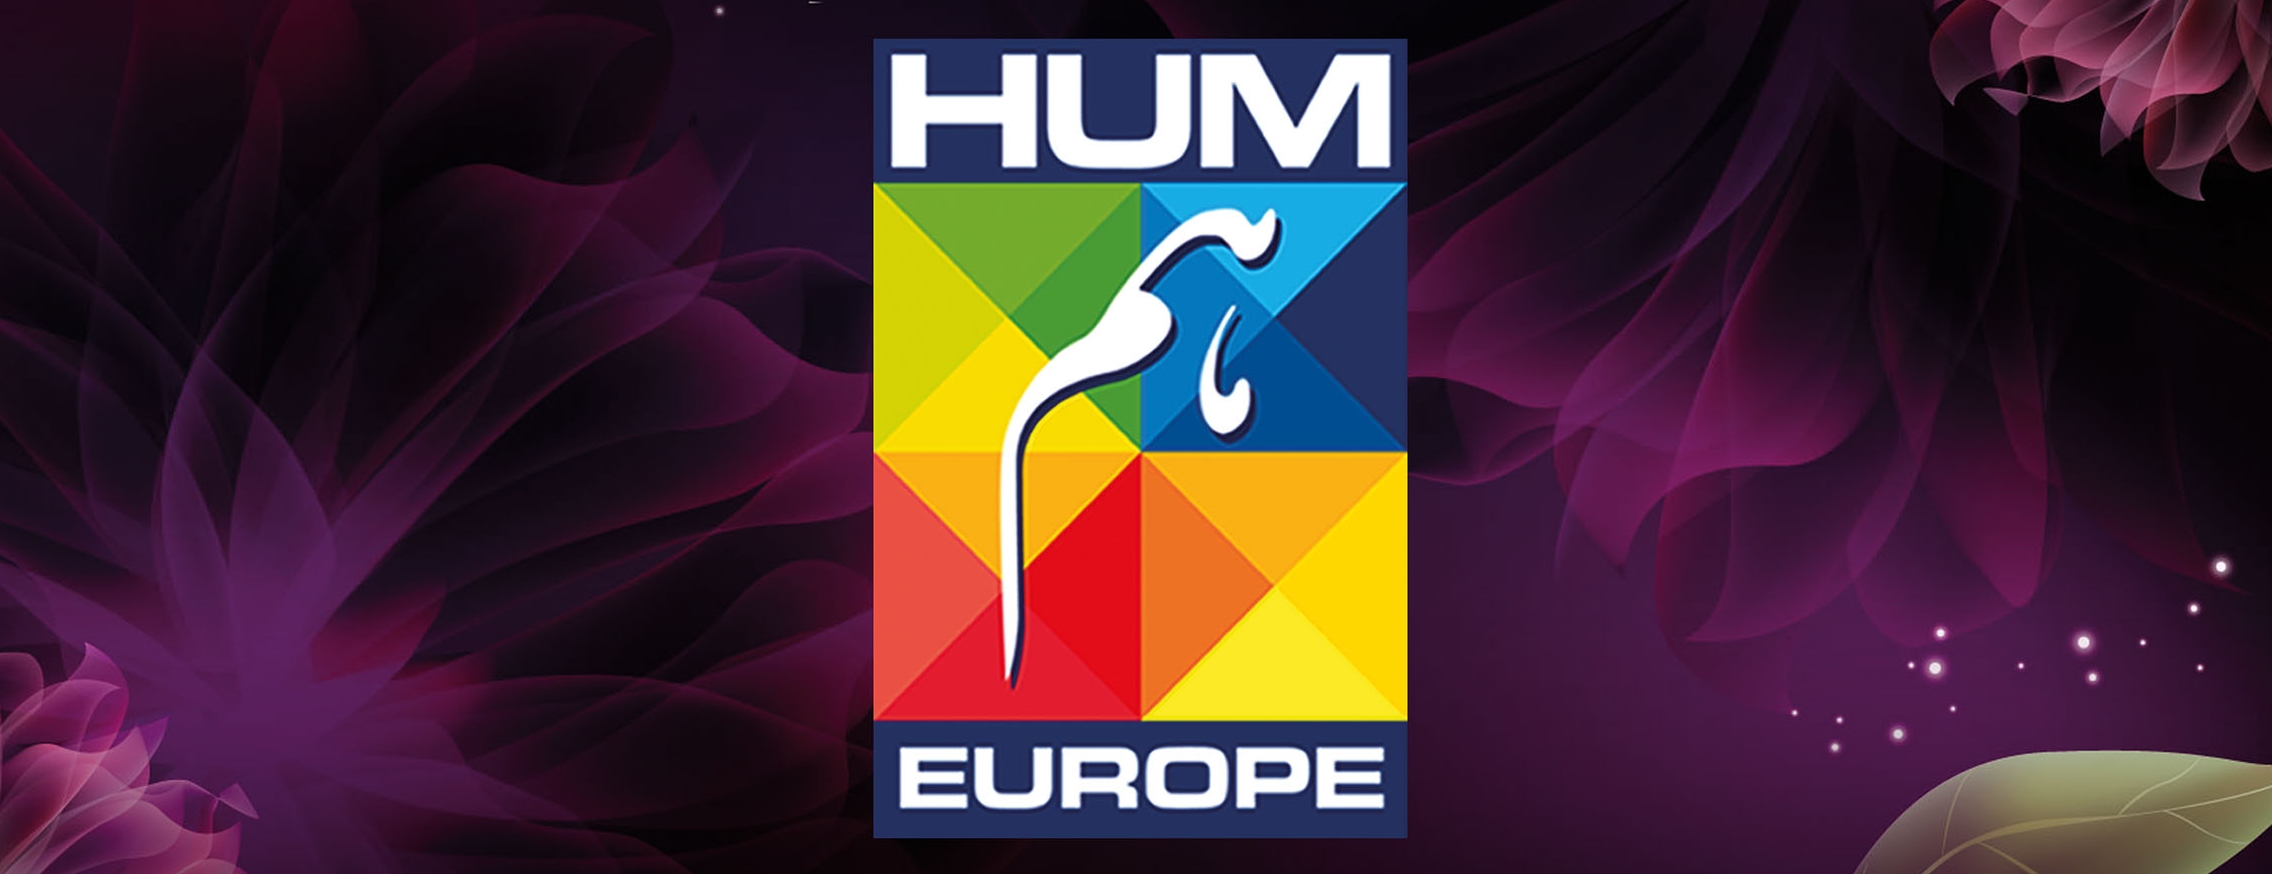 hum europe